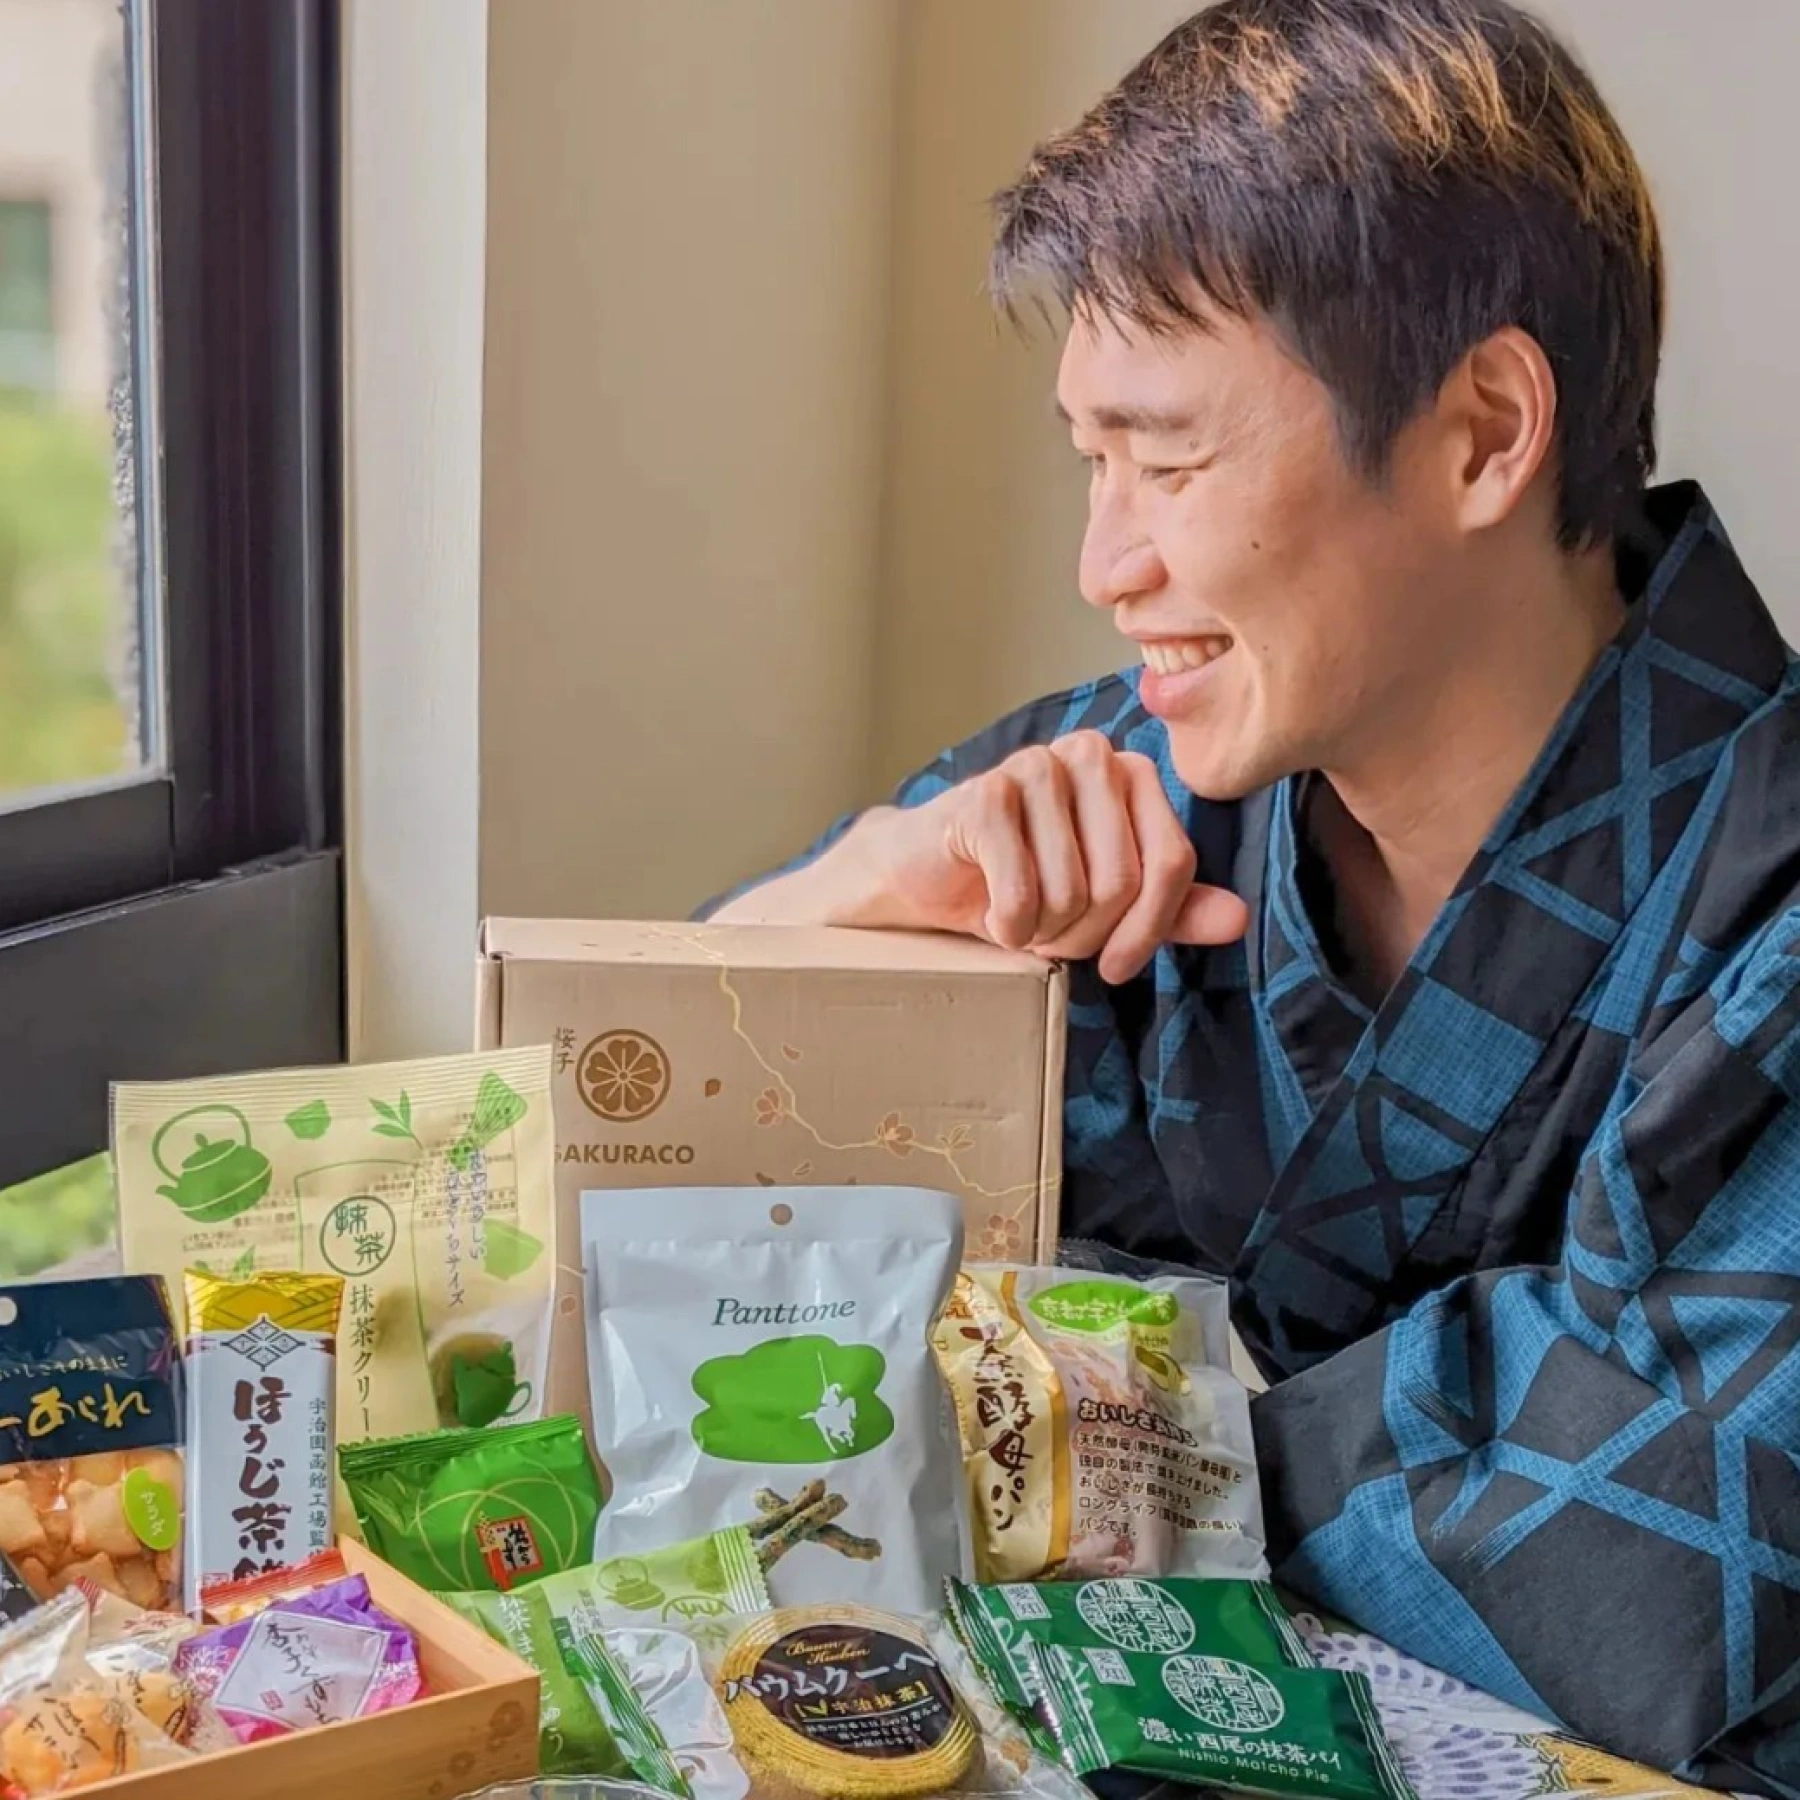 Smiling man behind many Sakuraco snacks